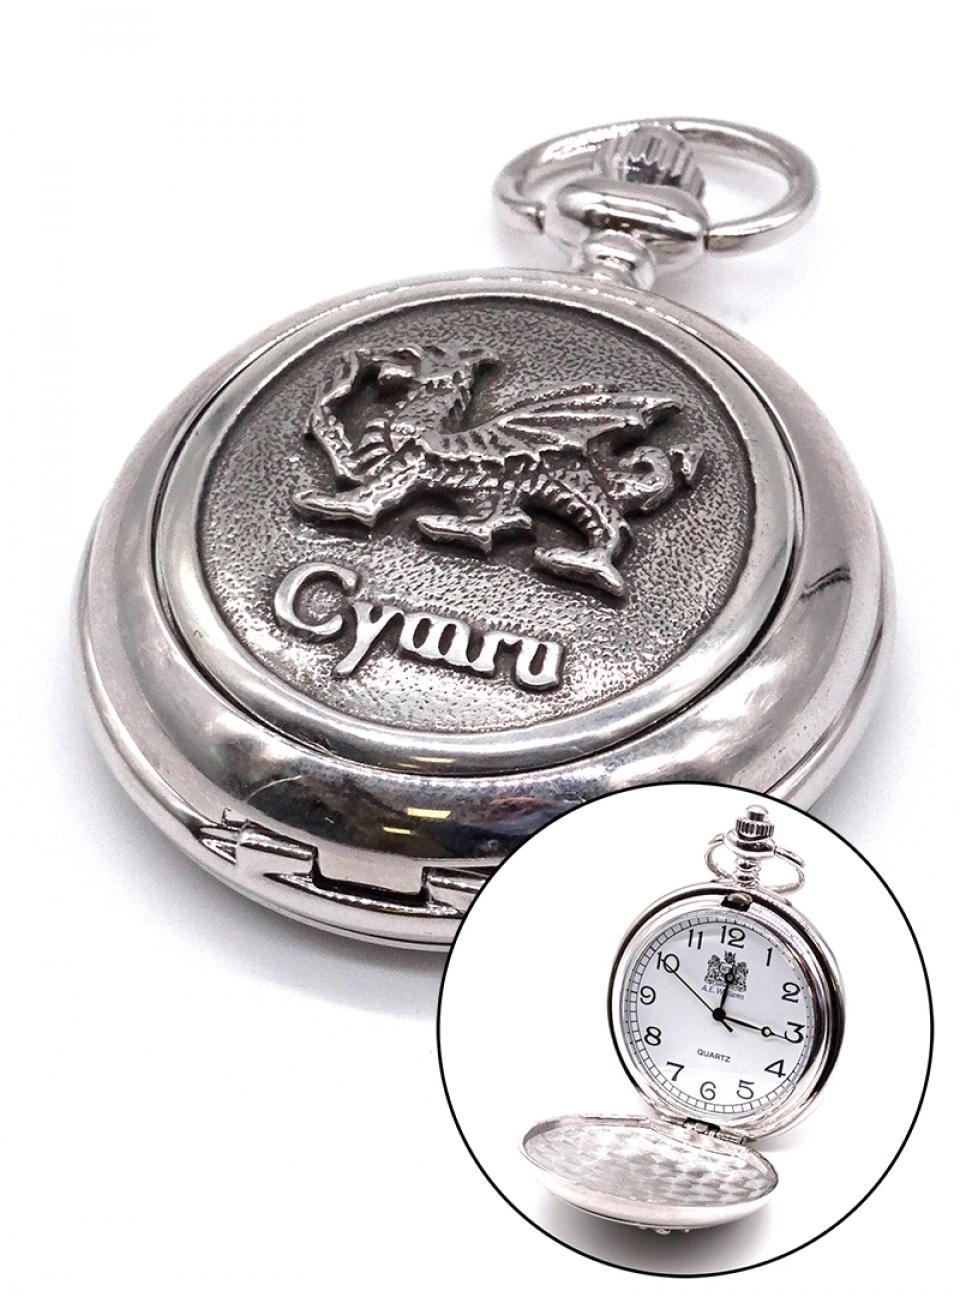 Cymru Dragon Pocket Watch